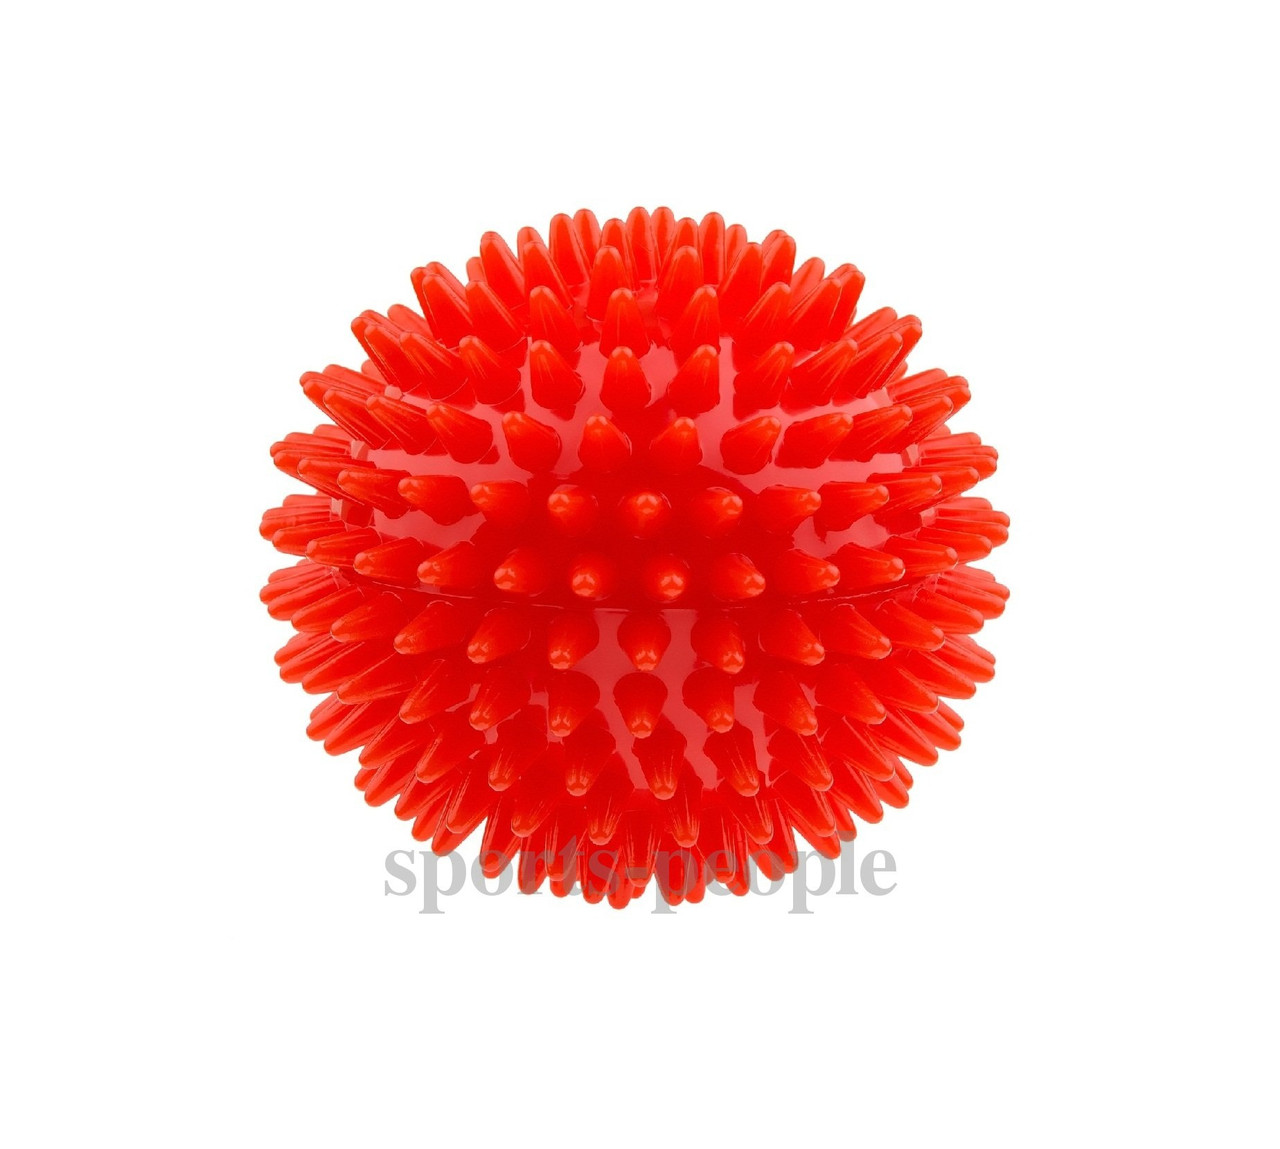 М'ячик масажний, з пухирцями, прогумований, (зжимається), Ø 6.5 см, обвід 20.5 см, різні кольори.